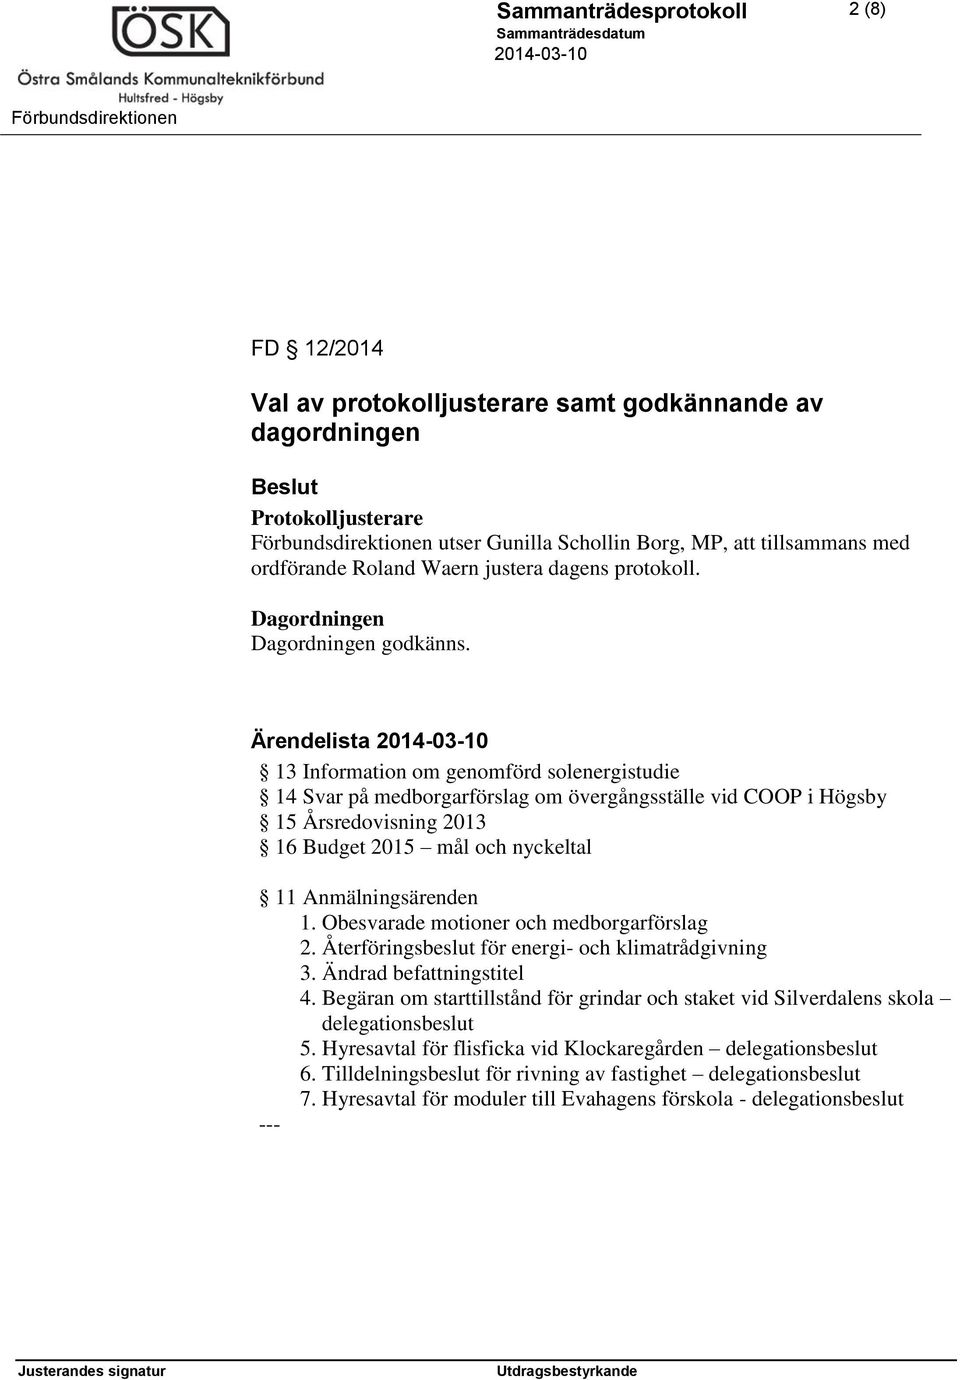 Ärendelista 13 Information om genomförd solenergistudie 14 Svar på medborgarförslag om övergångsställe vid COOP i Högsby 15 Årsredovisning 2013 16 Budget 2015 mål och nyckeltal 11 Anmälningsärenden 1.